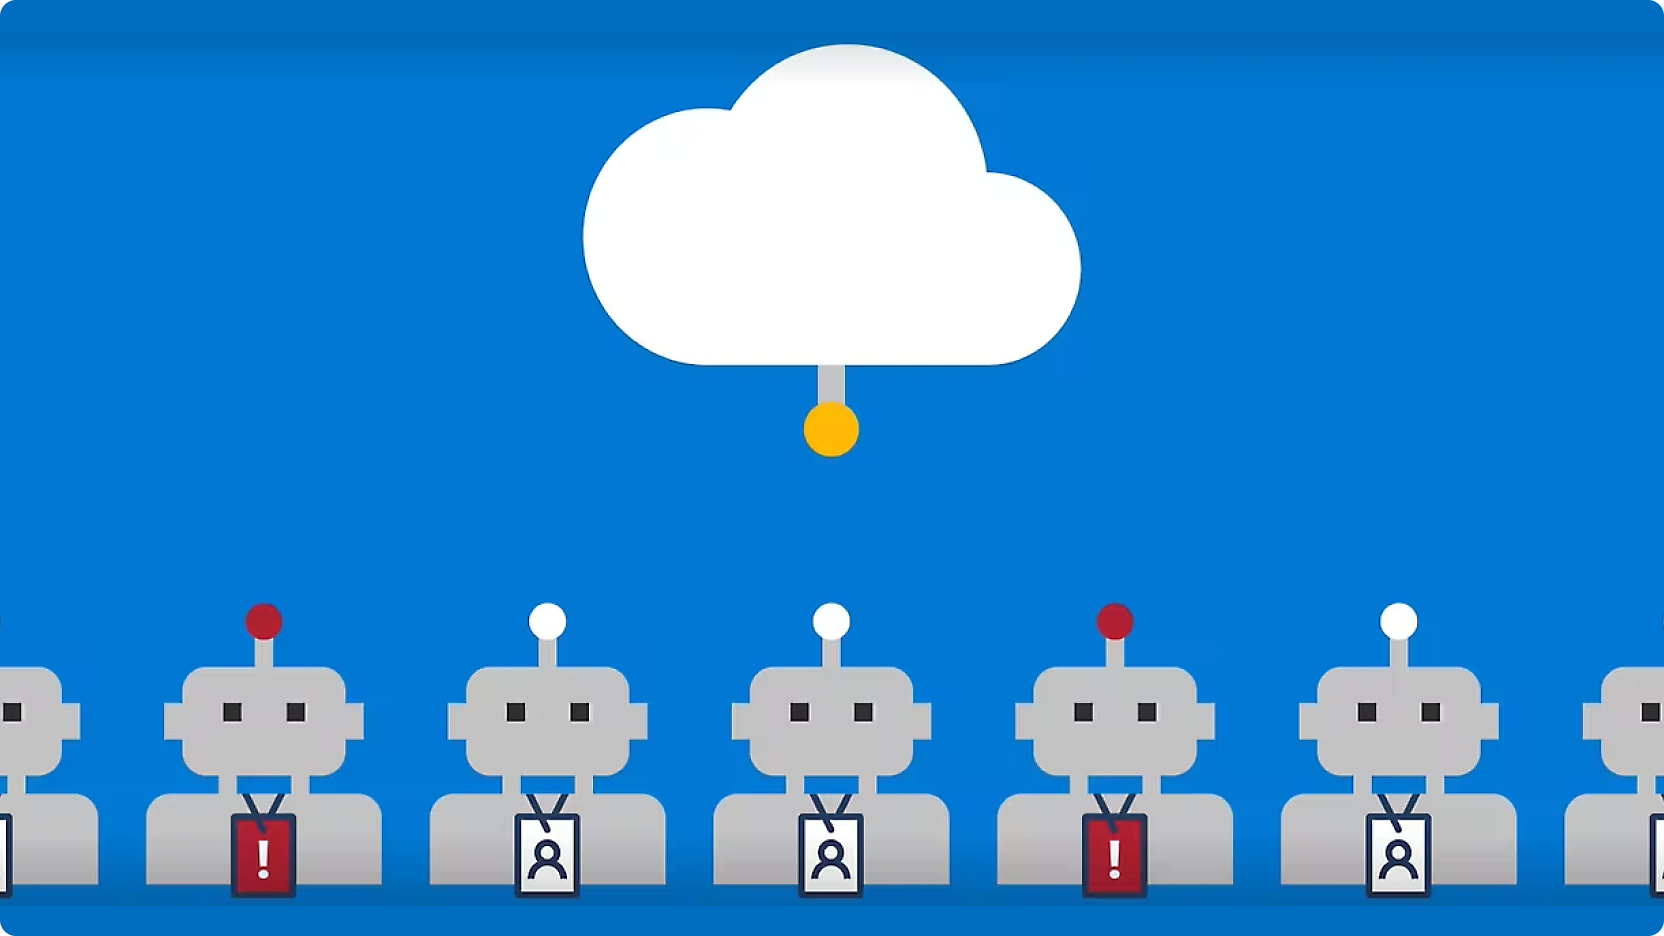 Graphique représentant des rangées de robots avec des boutons rouges sur la tête, reliés par des lignes à un cloud central